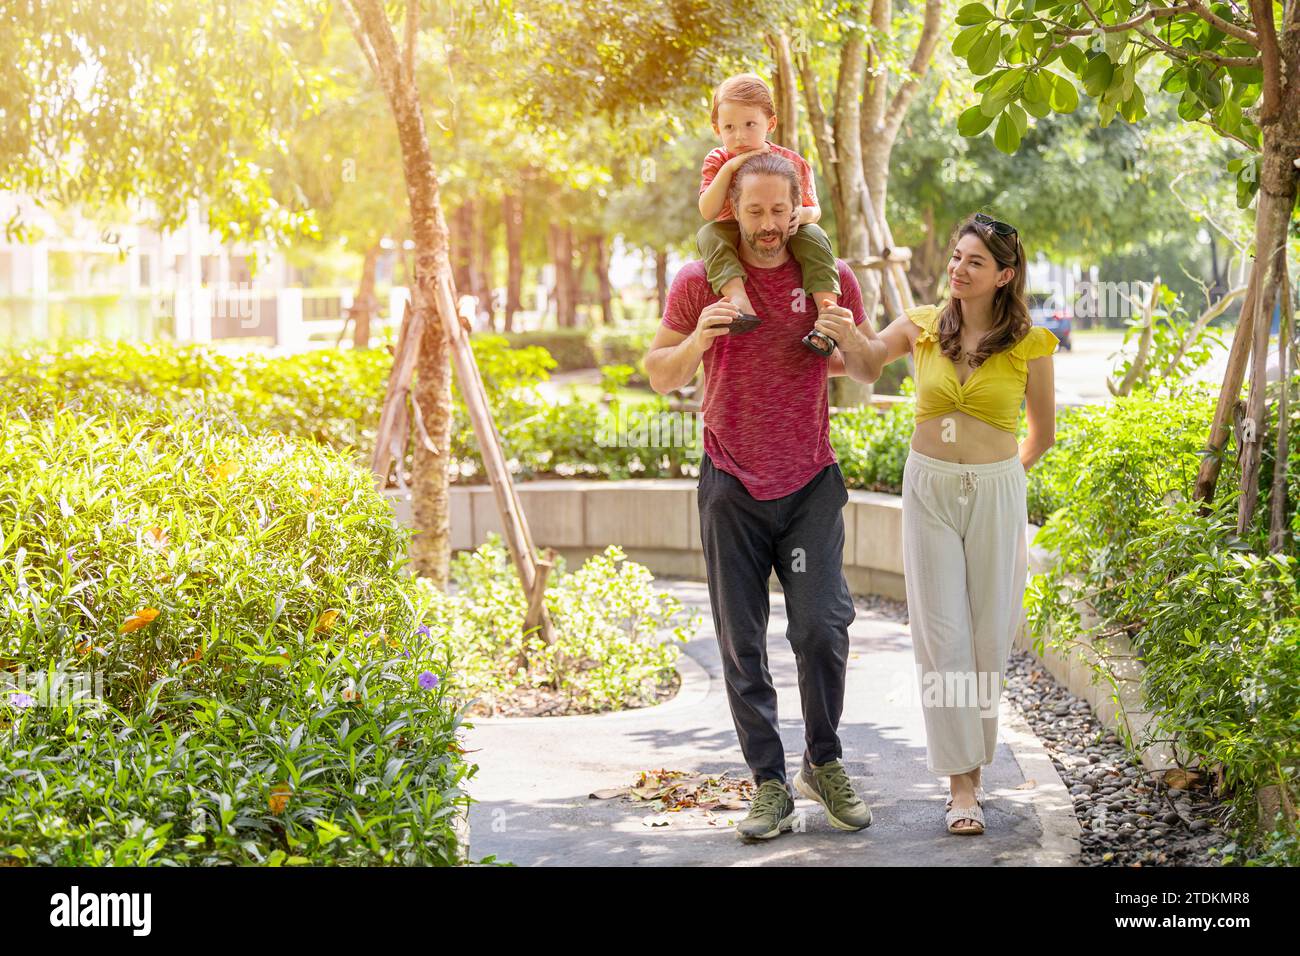 Glückliche Familie zusammen spazieren im öffentlichen grünen Park junger Junge, der auf der Schulter des Vaters um frische ökologisches Bäume herum sitzt. Stockfoto